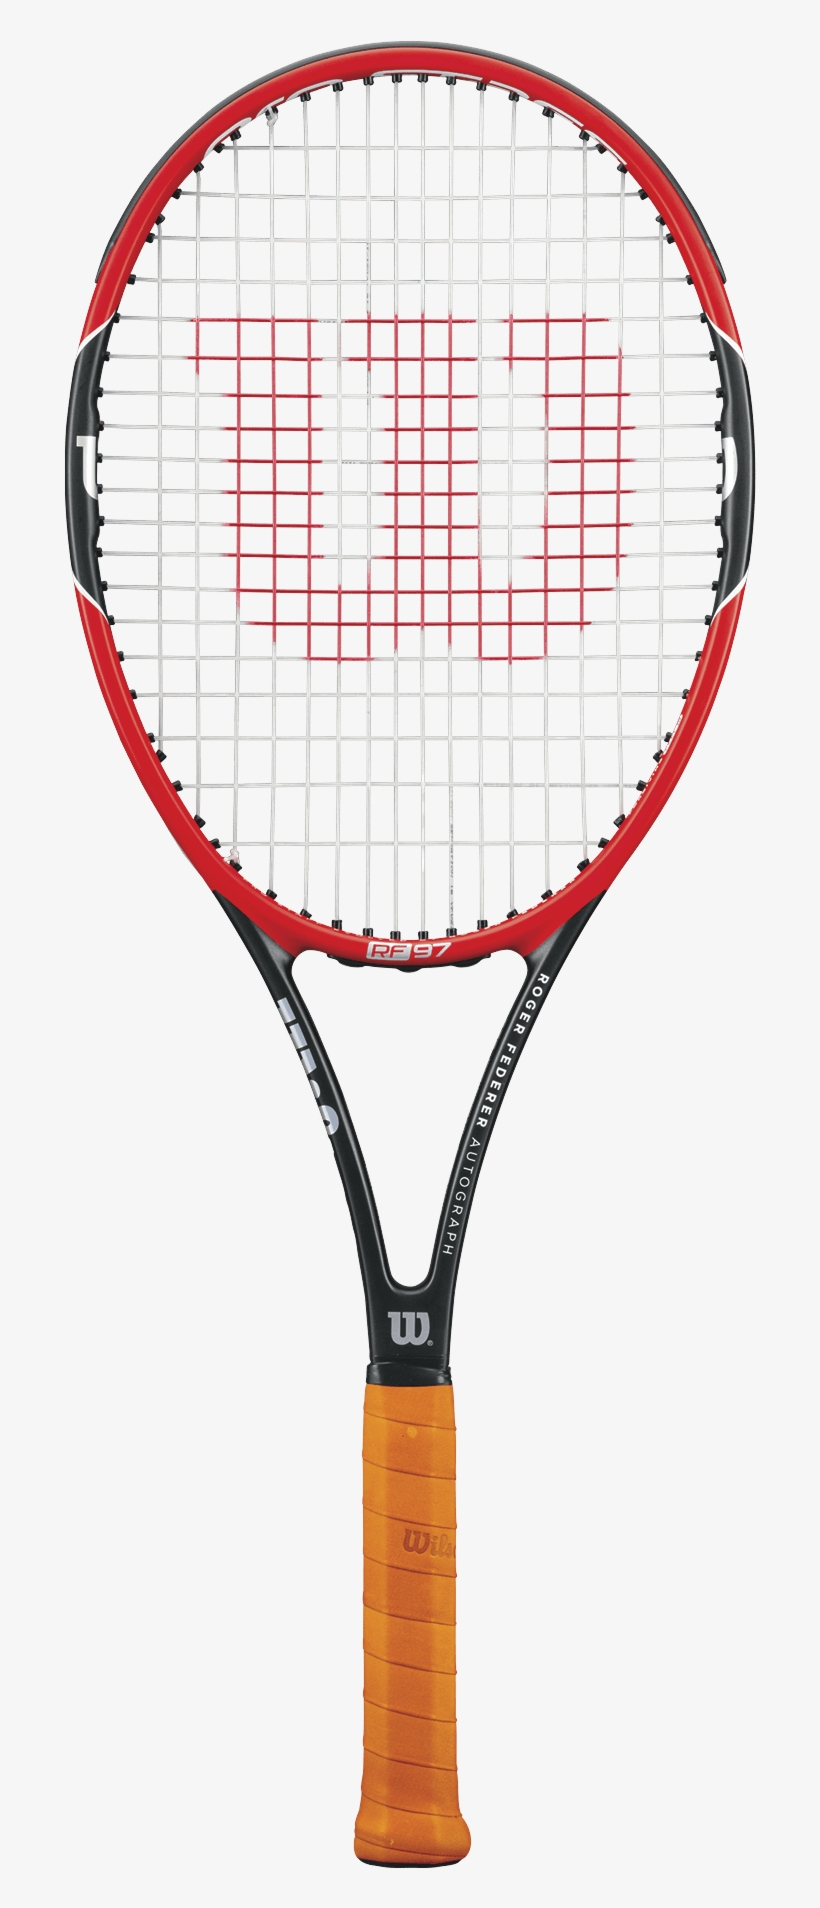 Roger Federer Tennis Racket, transparent png #7736554